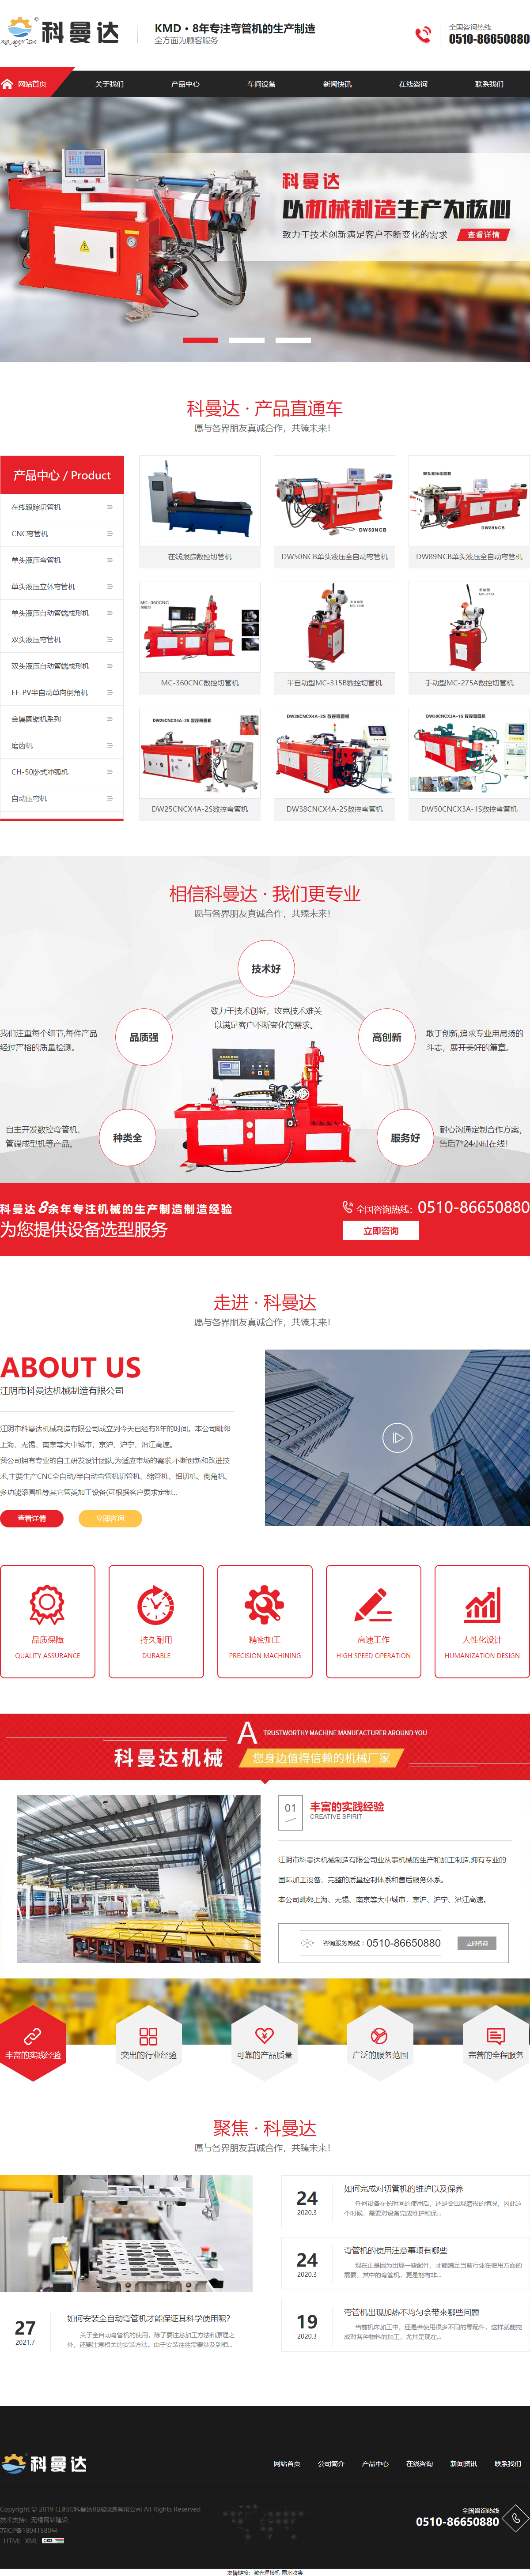 江阴市科曼达机械制造有限公司网站案例